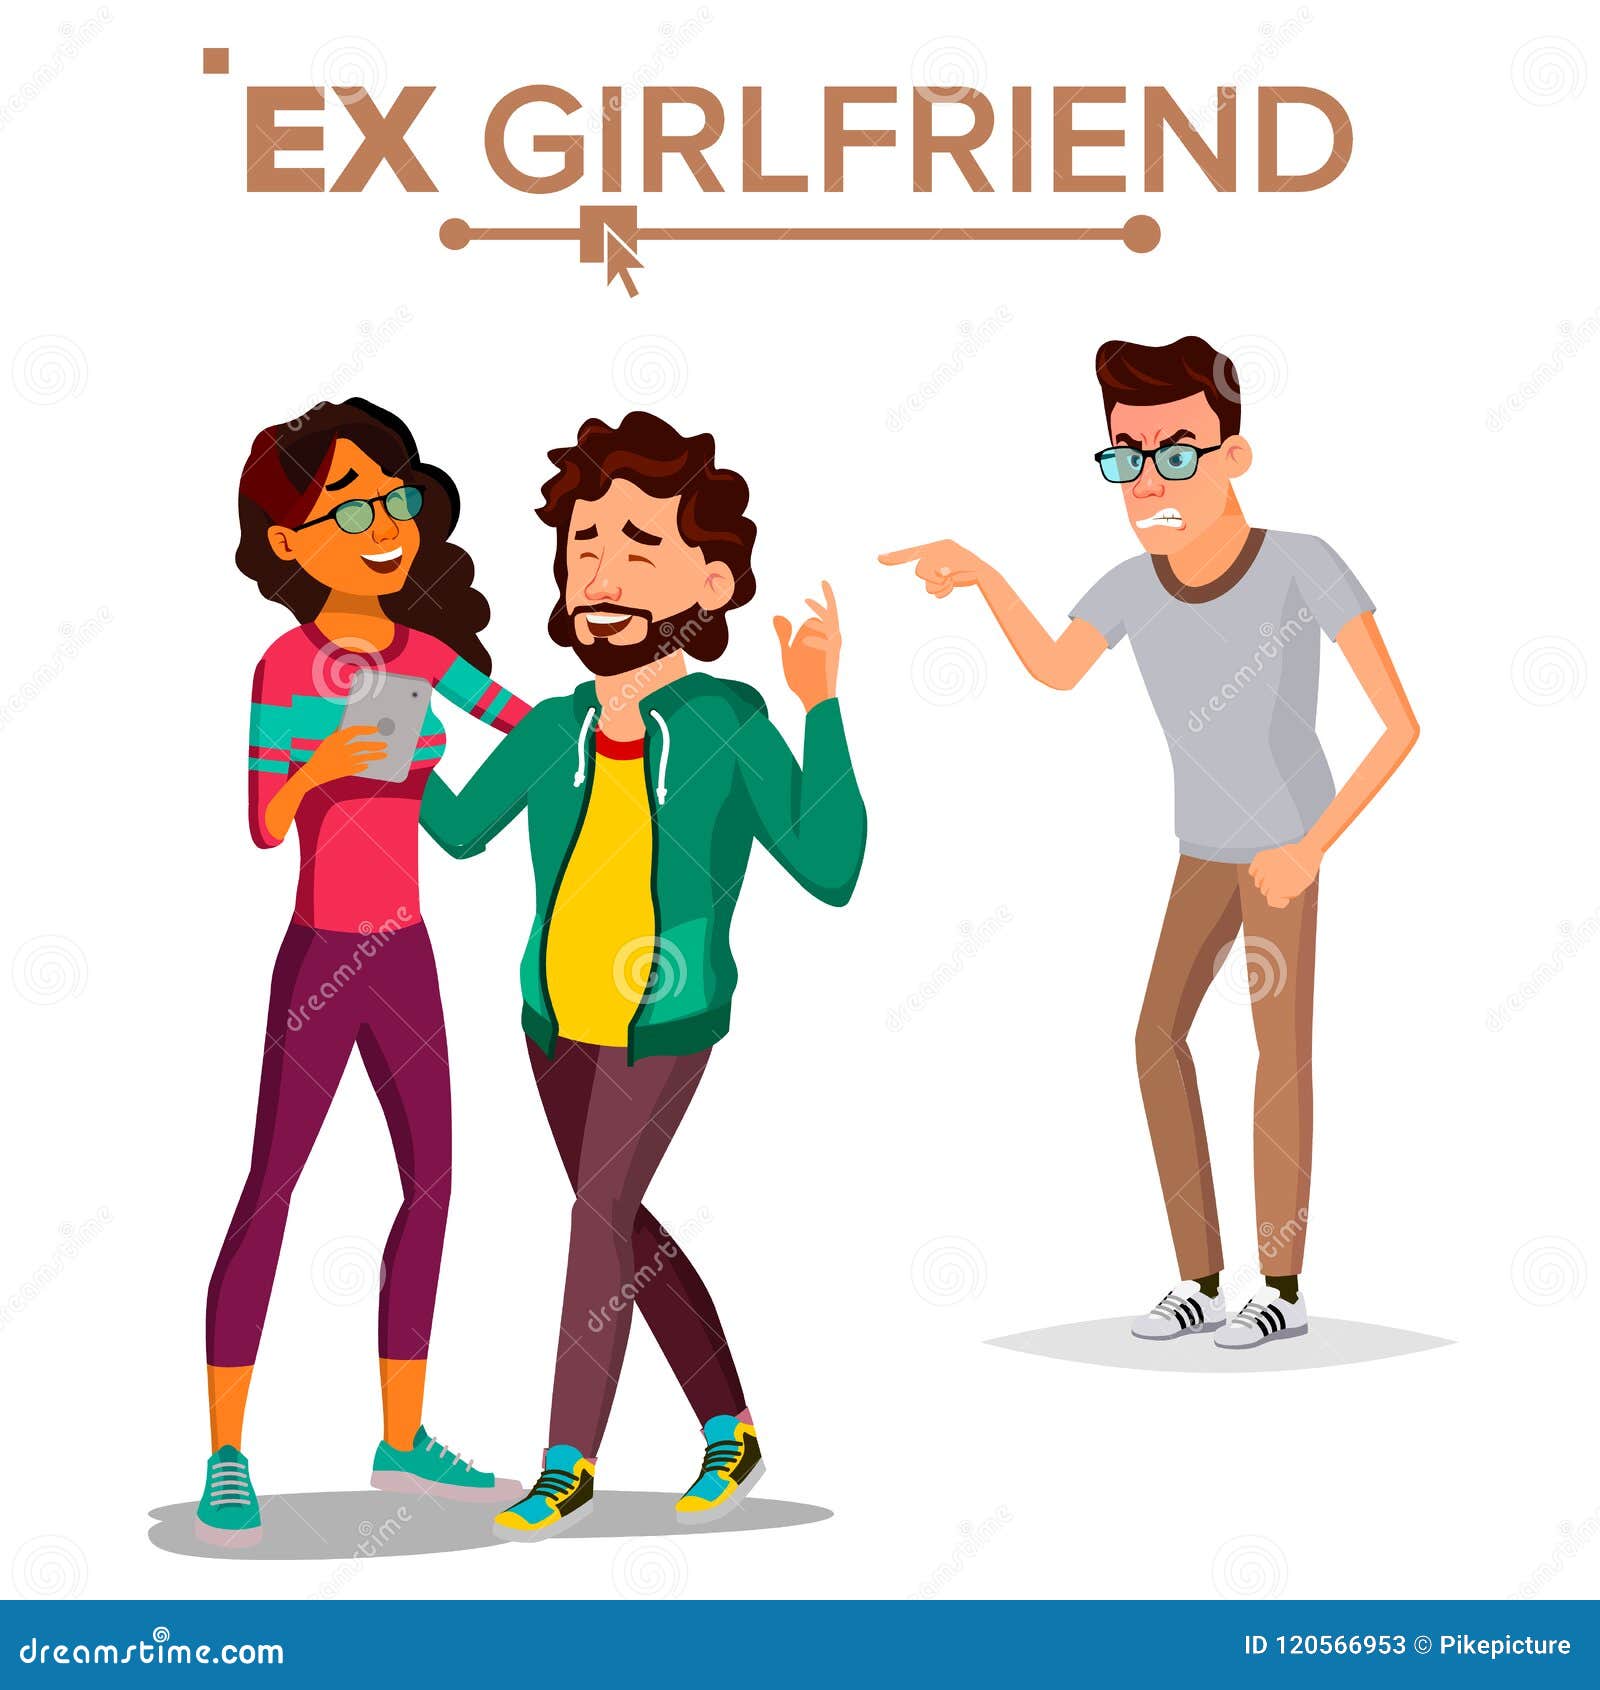 free ex girlfriend picture porn scene picture